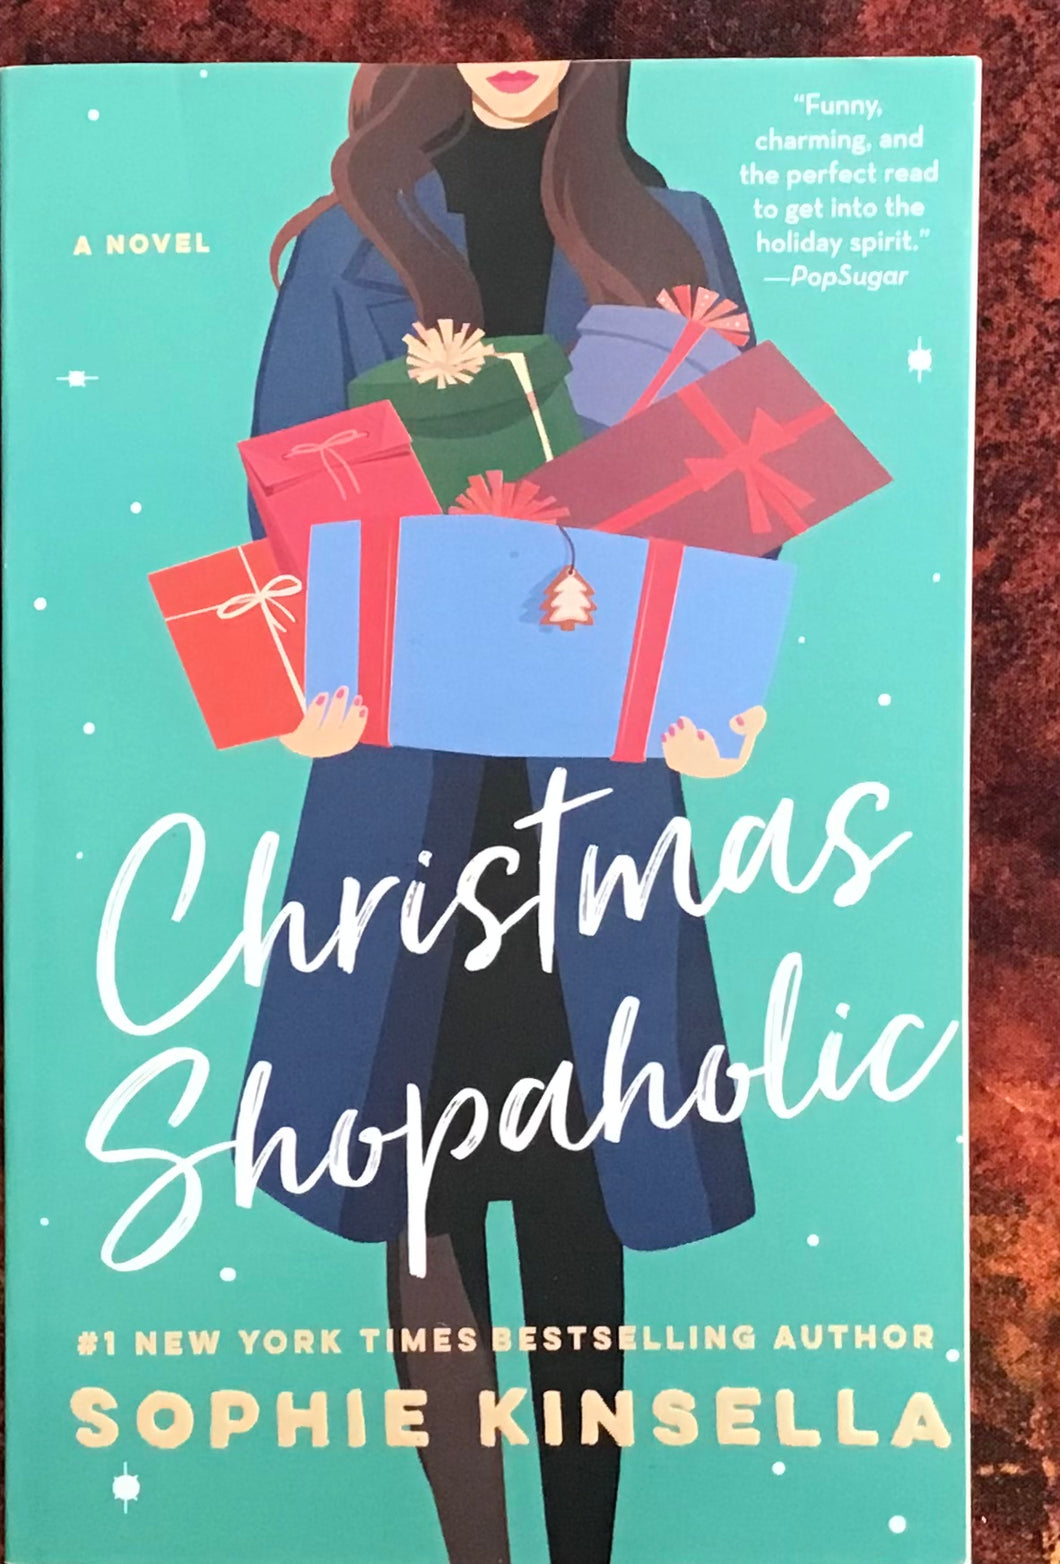 Christmas Shopaholic, by Sophie Kinsella